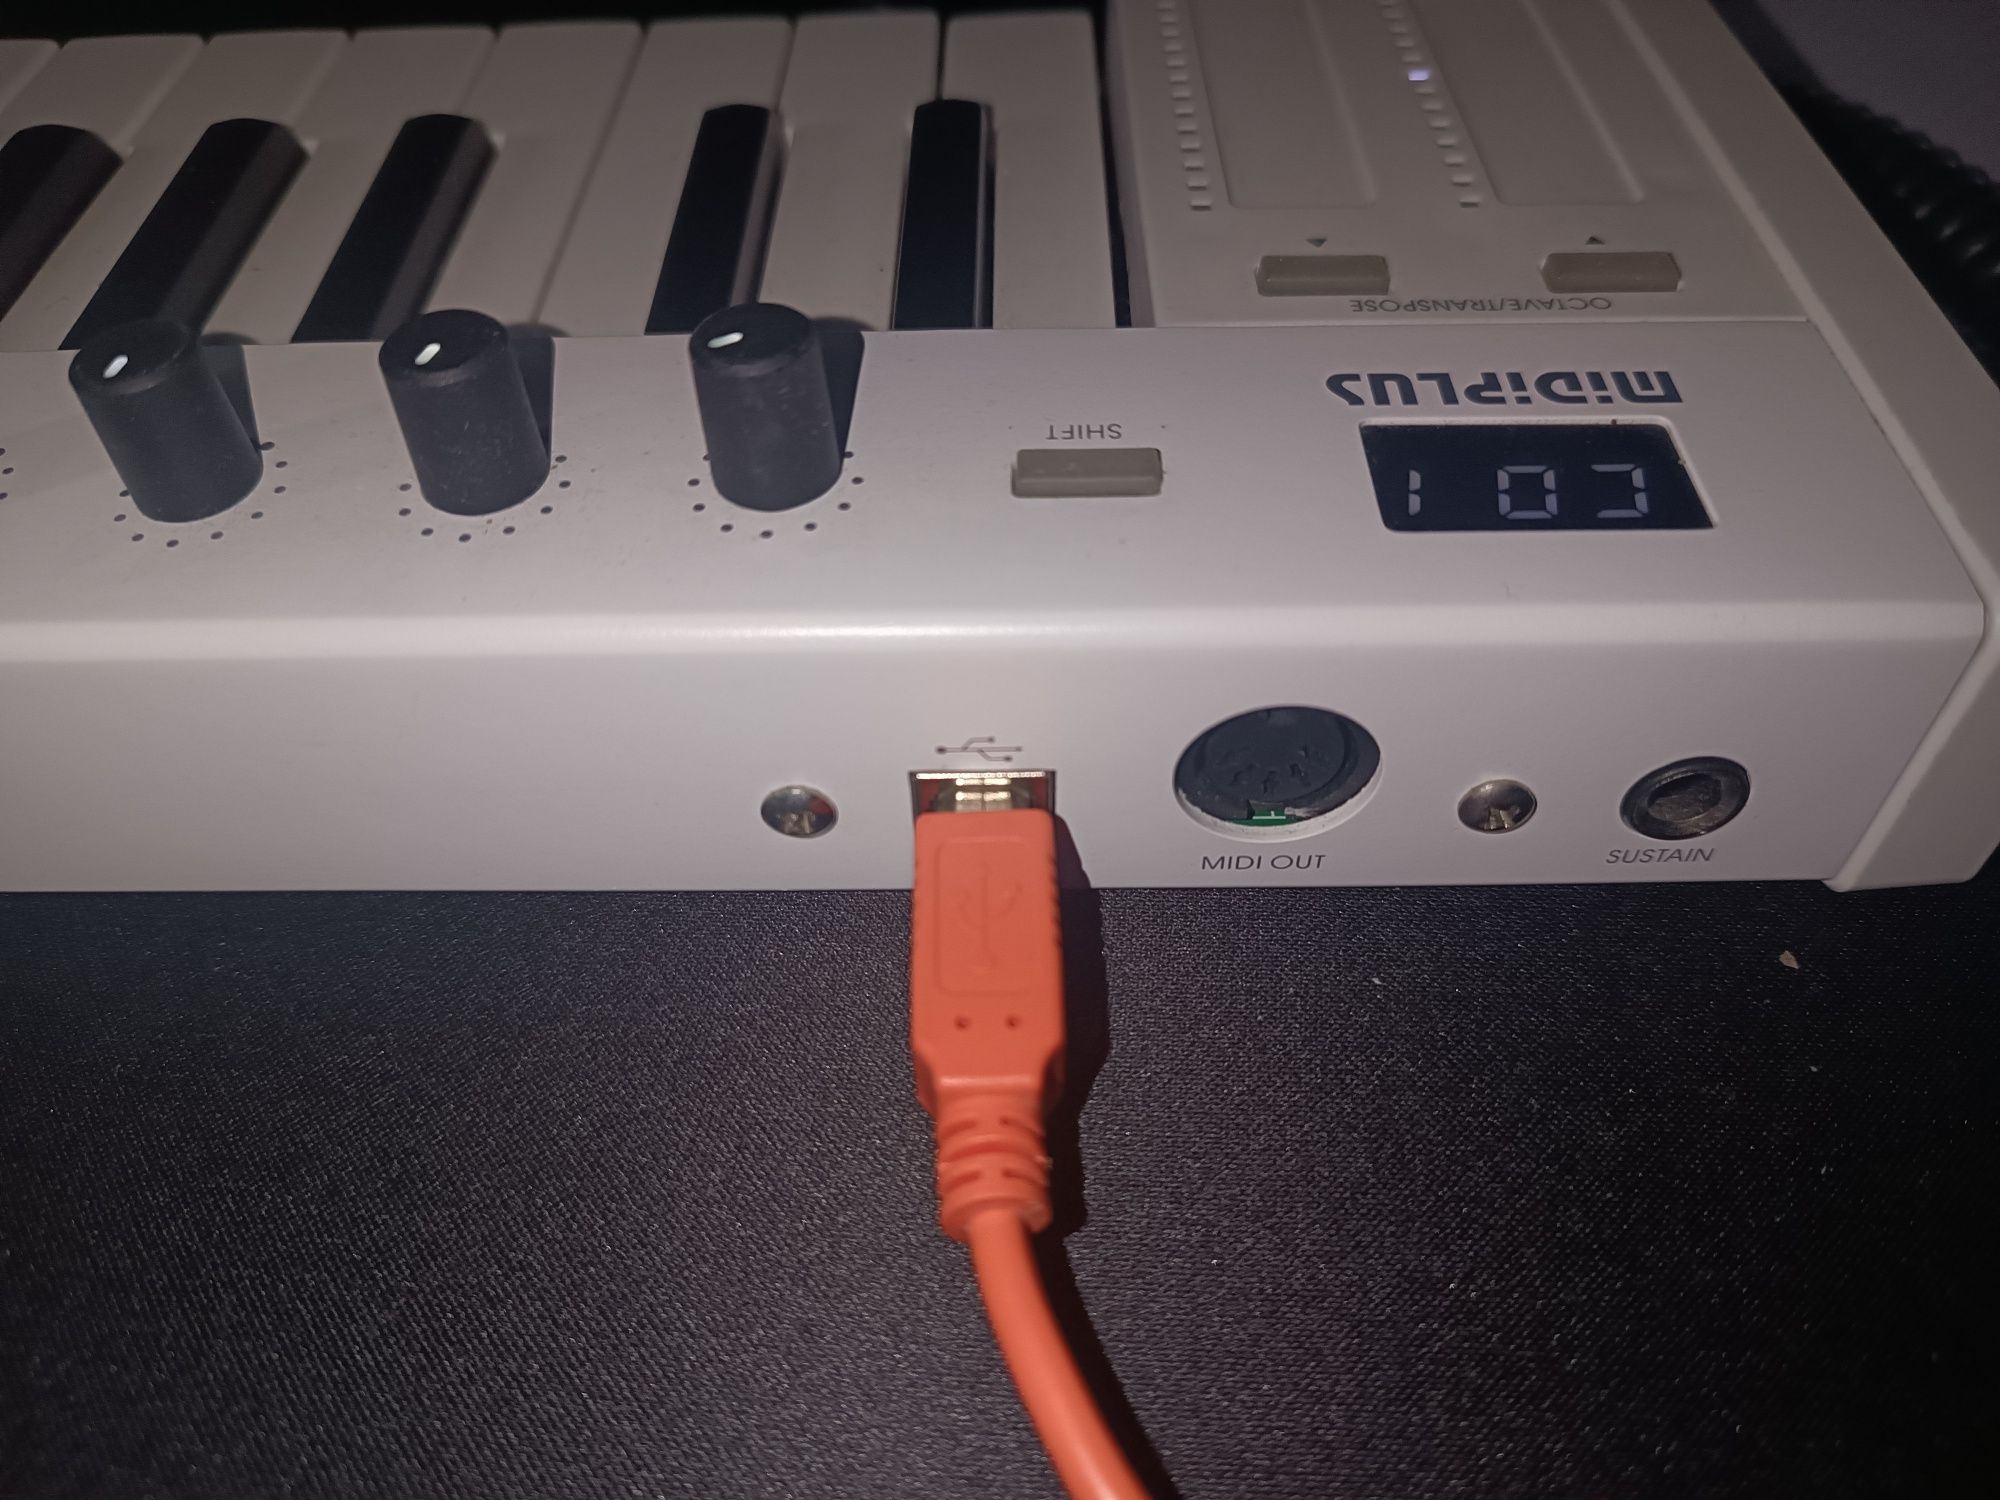 MidiPlus X4 mini klawiatura sterująca